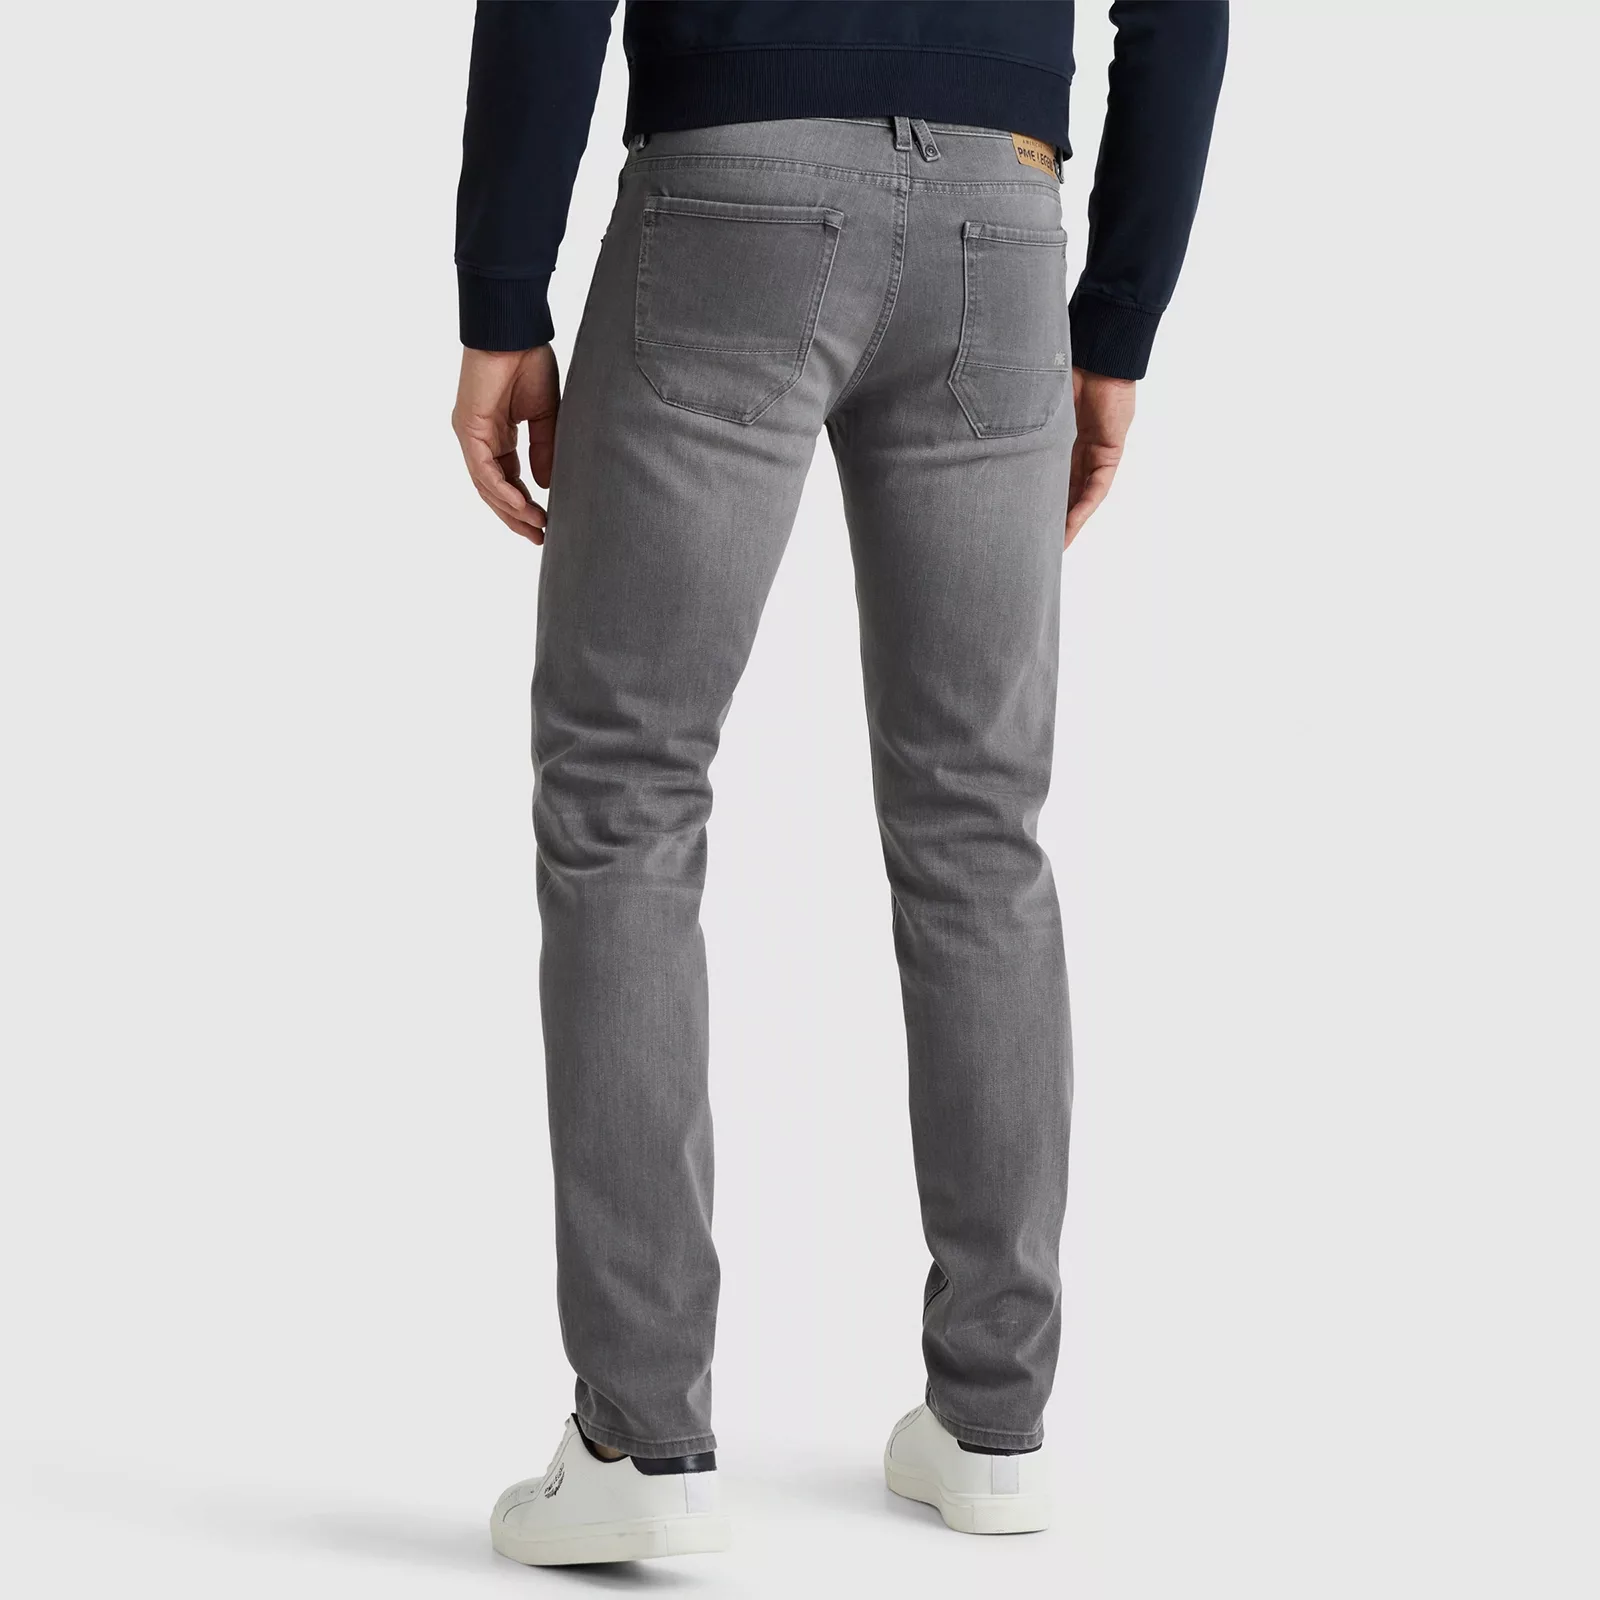 Pme Legend Herren Jeans Ptr121-rog günstig online kaufen